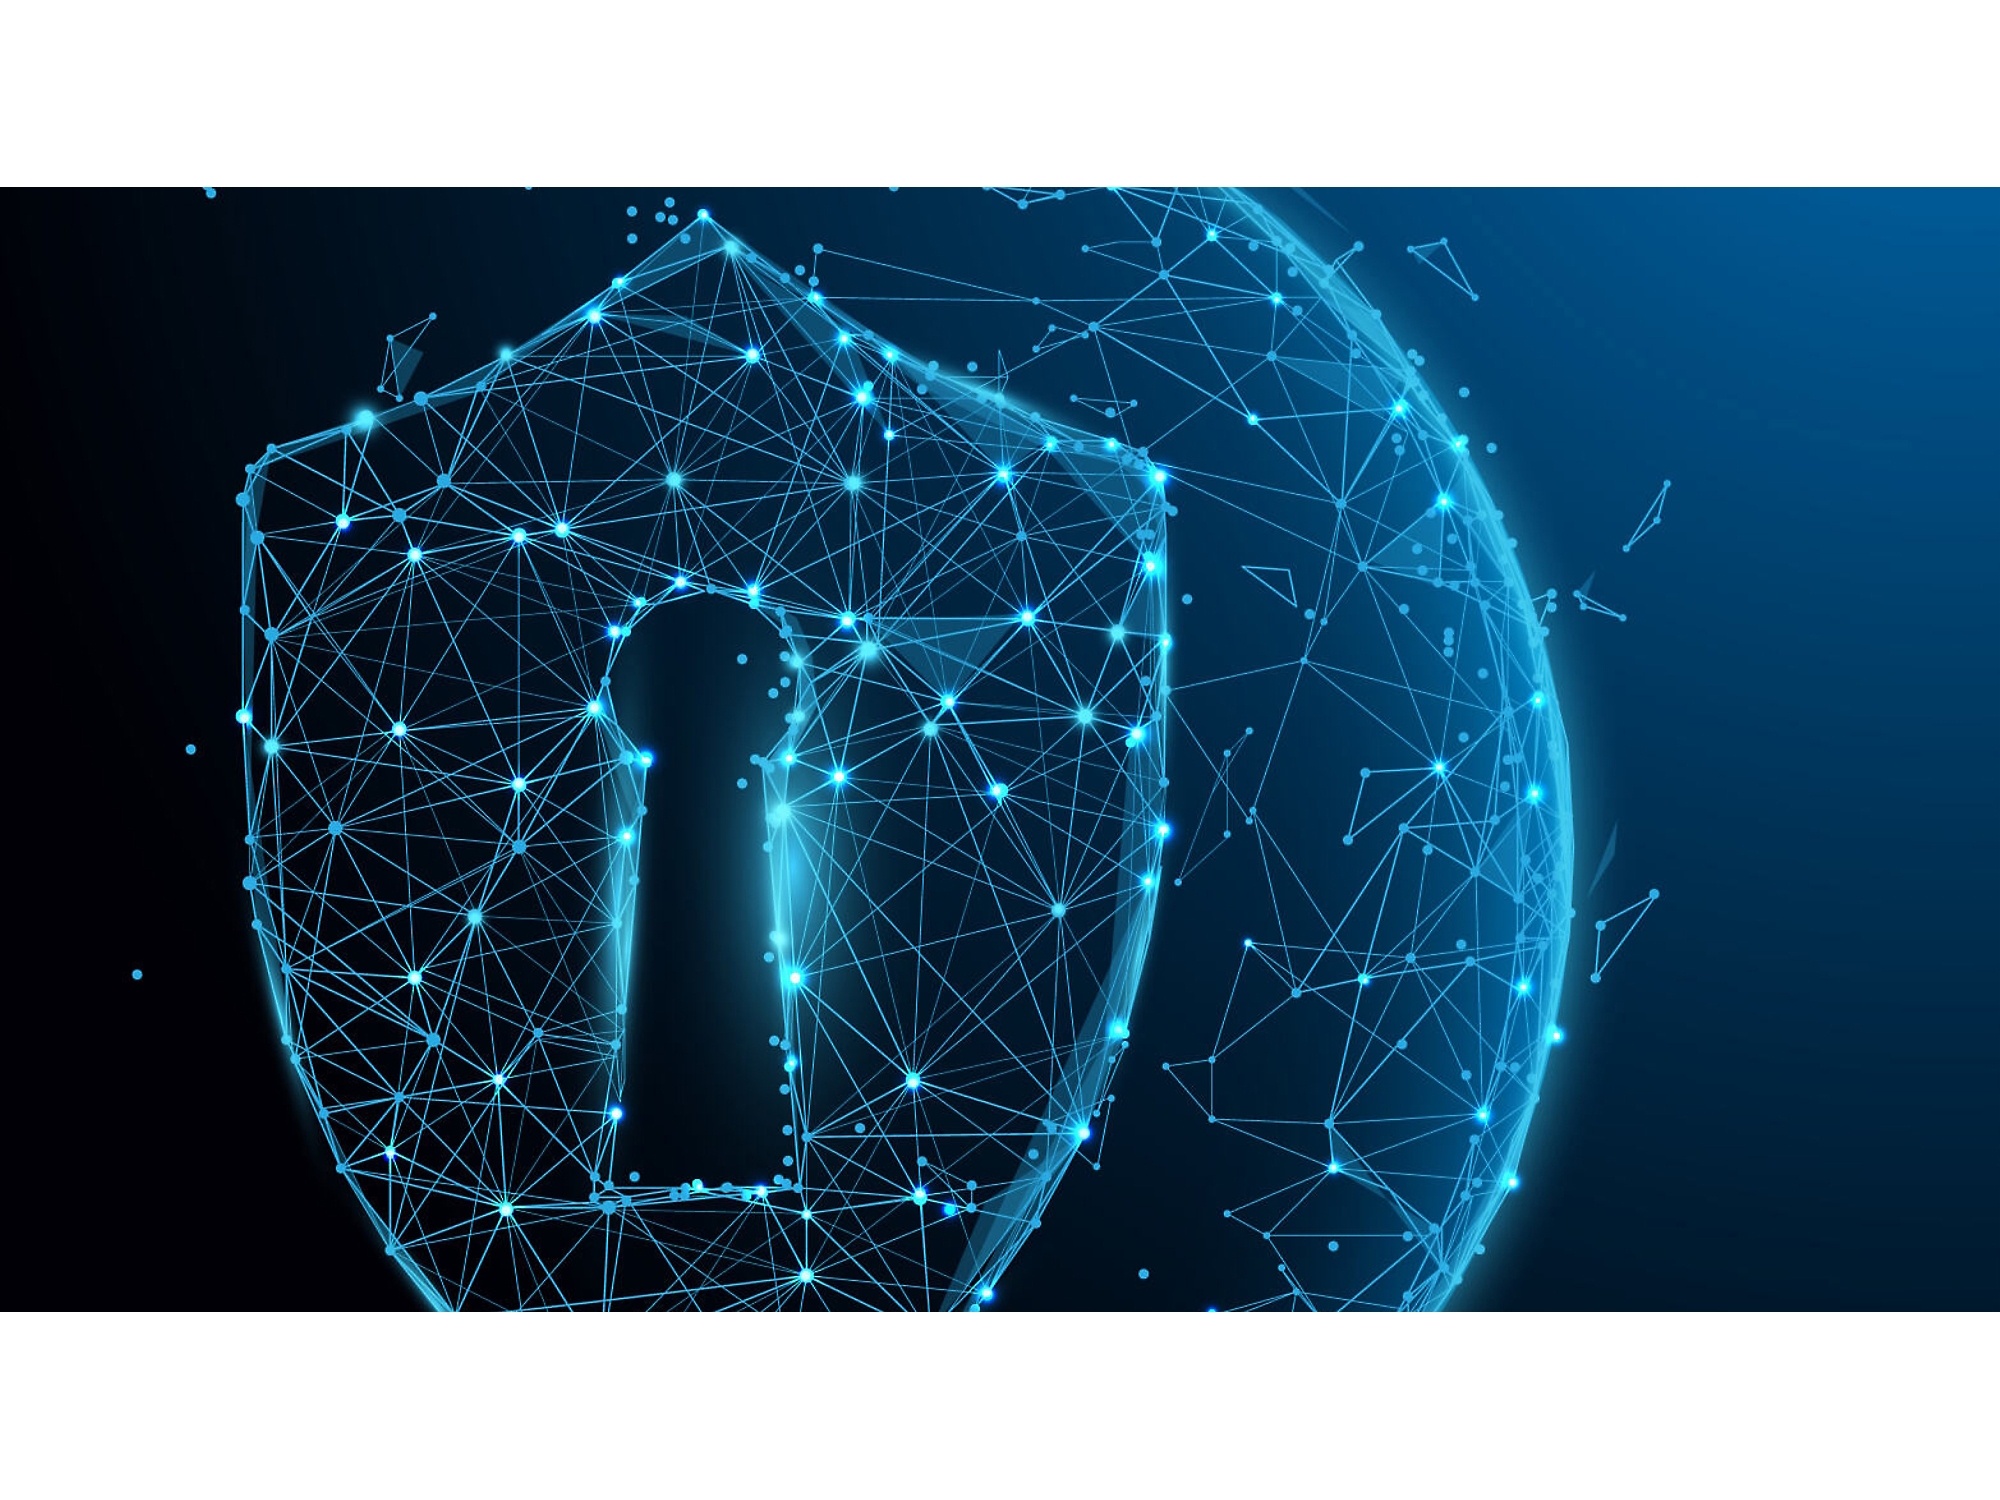 Digitálna ilustrácia svietiaceho modrého drôteného štítu s kľúčovou dierkou, ktorý symbolizuje kybernetickú bezpečnosť